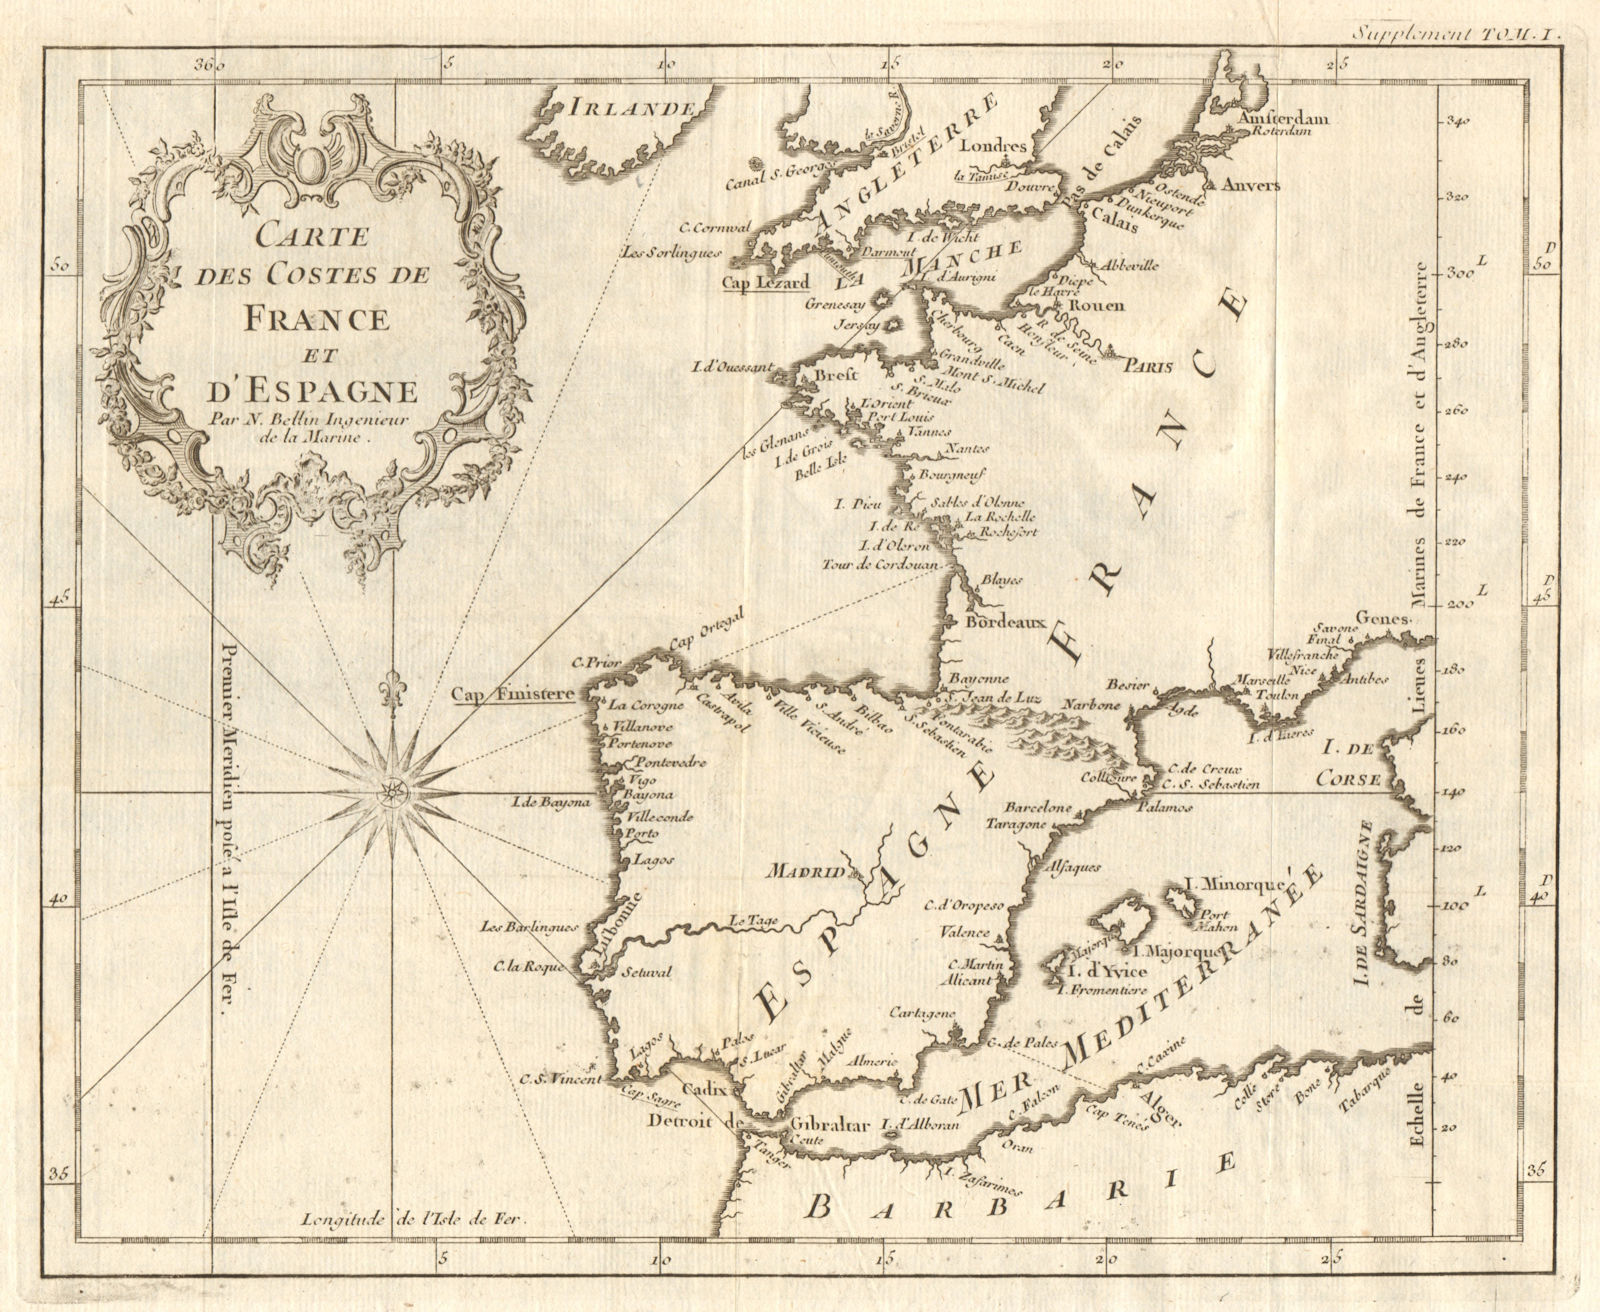 'Carte des Costes de France & d’Espagne'. France & Spain coasts. BELLIN 1746 map